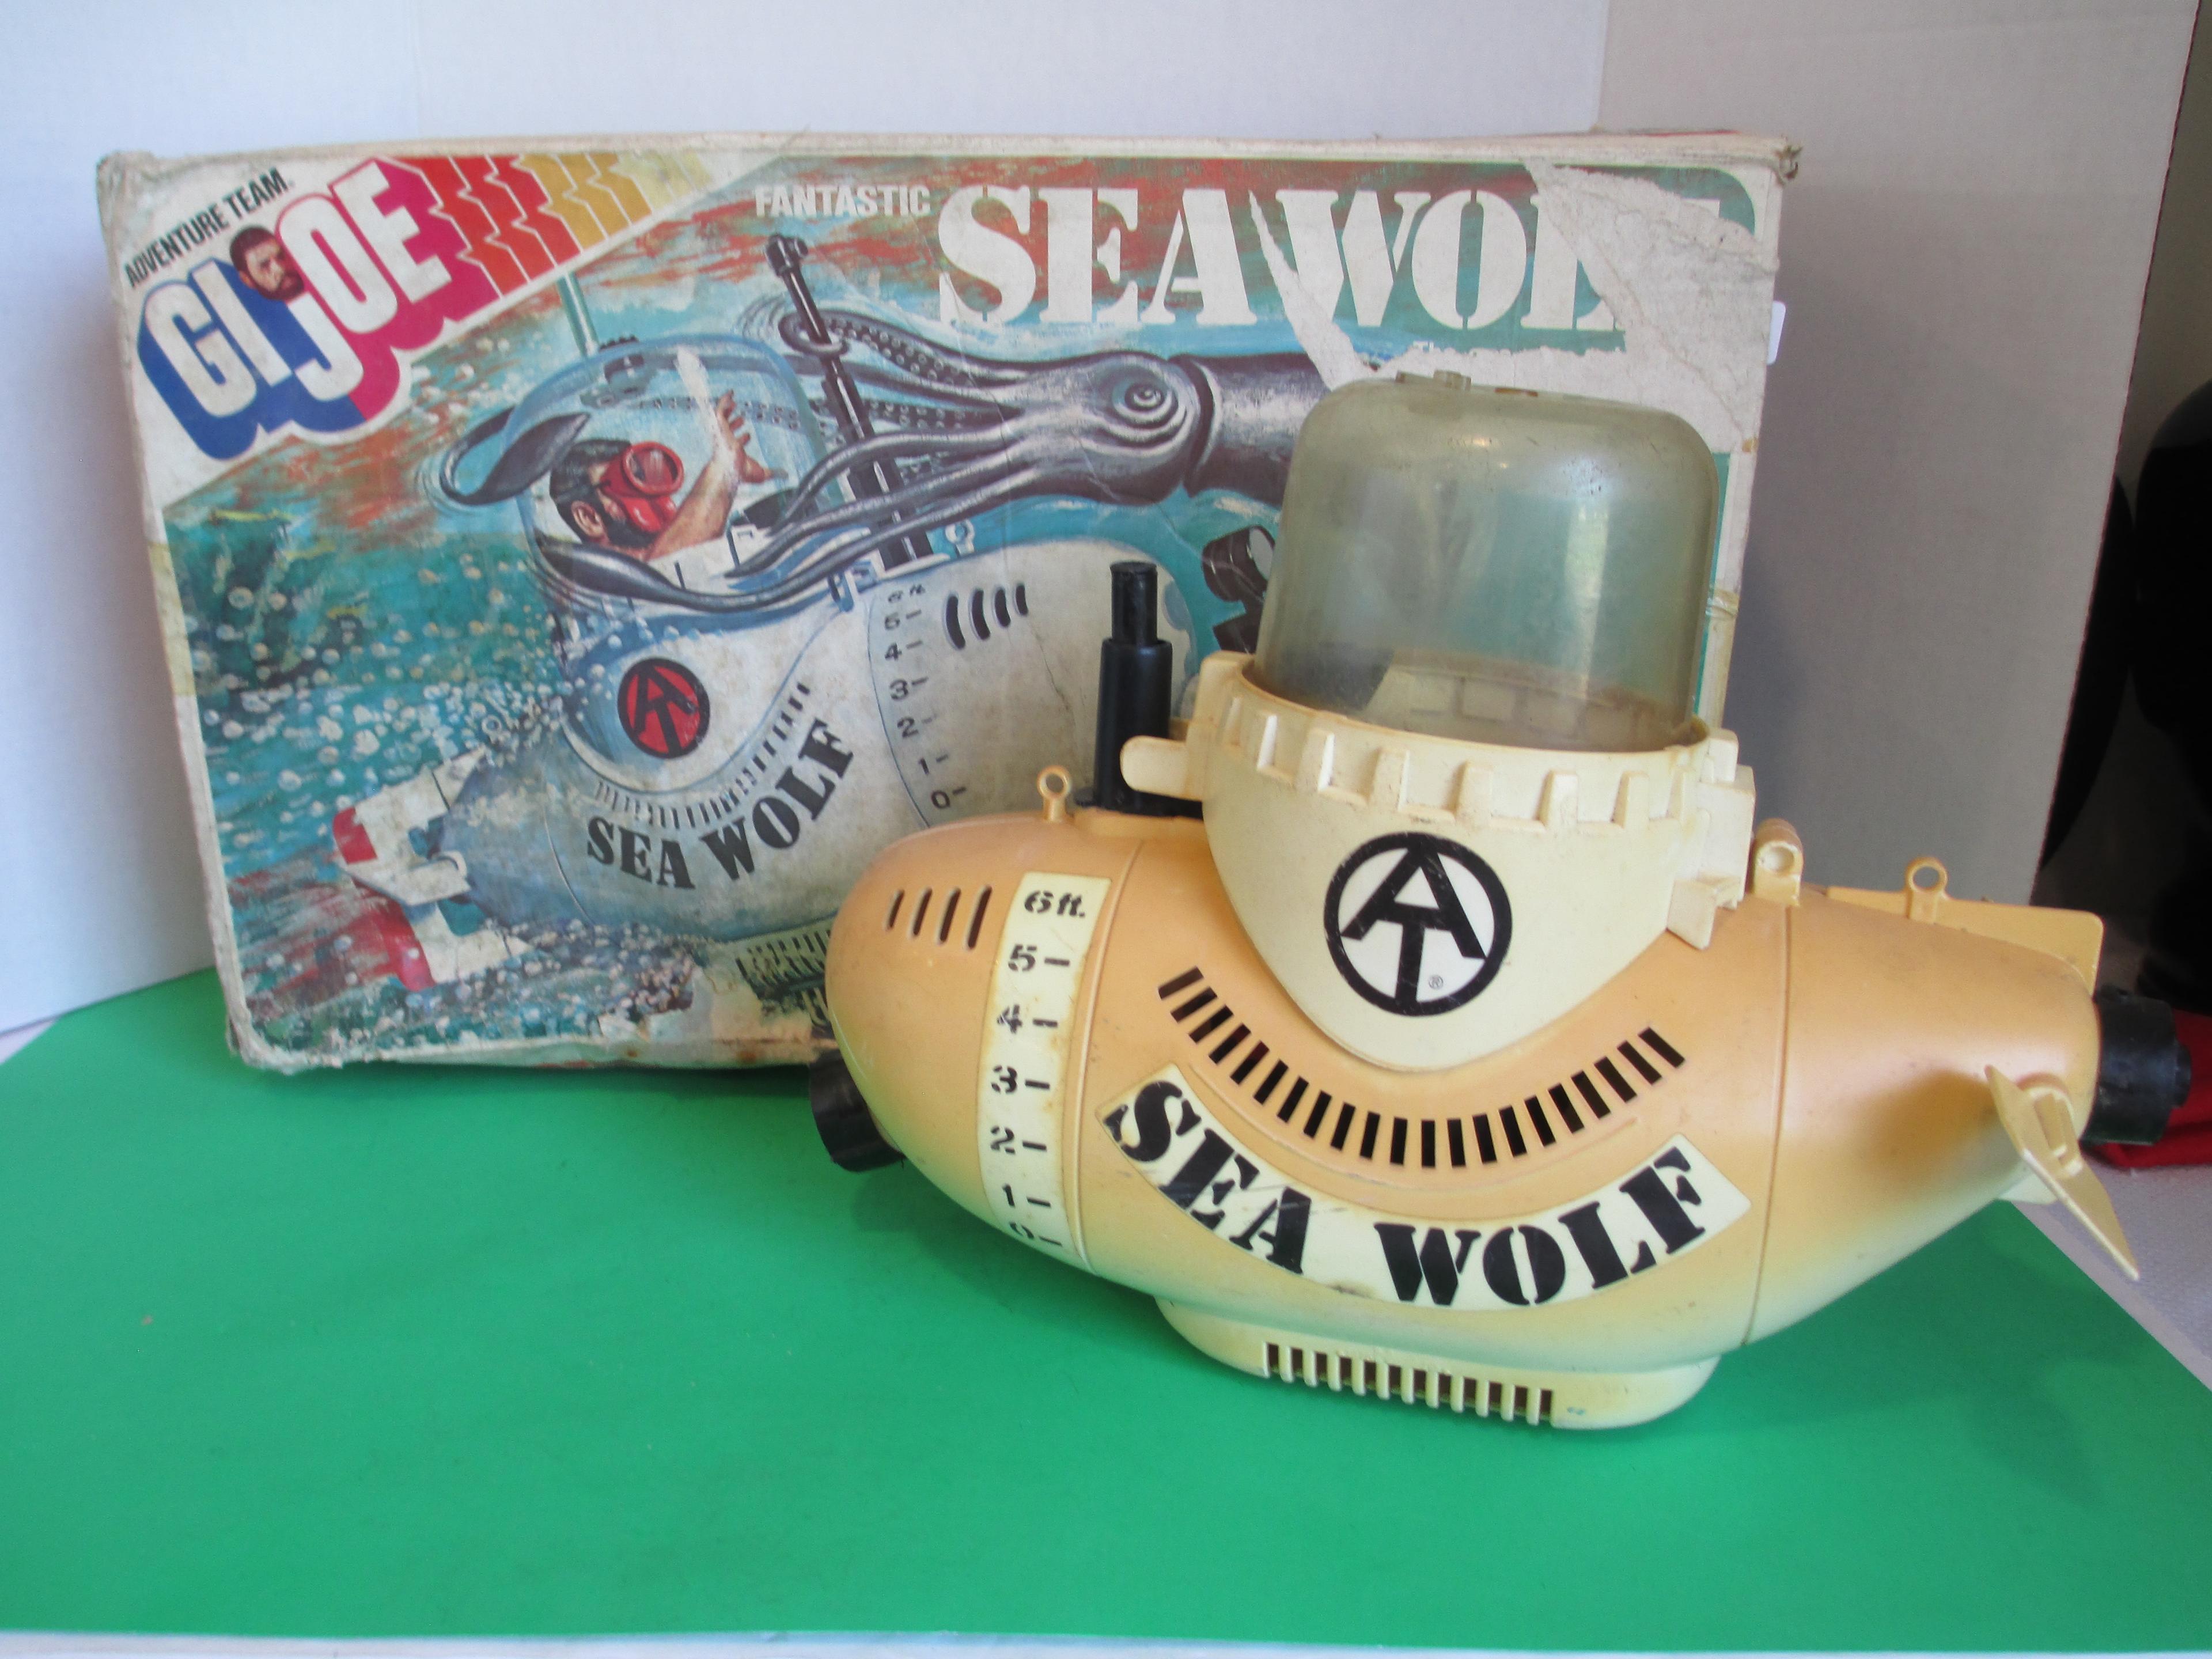 1975 G.I. Joe Sea Wolf Submarine Toy by Hasbro